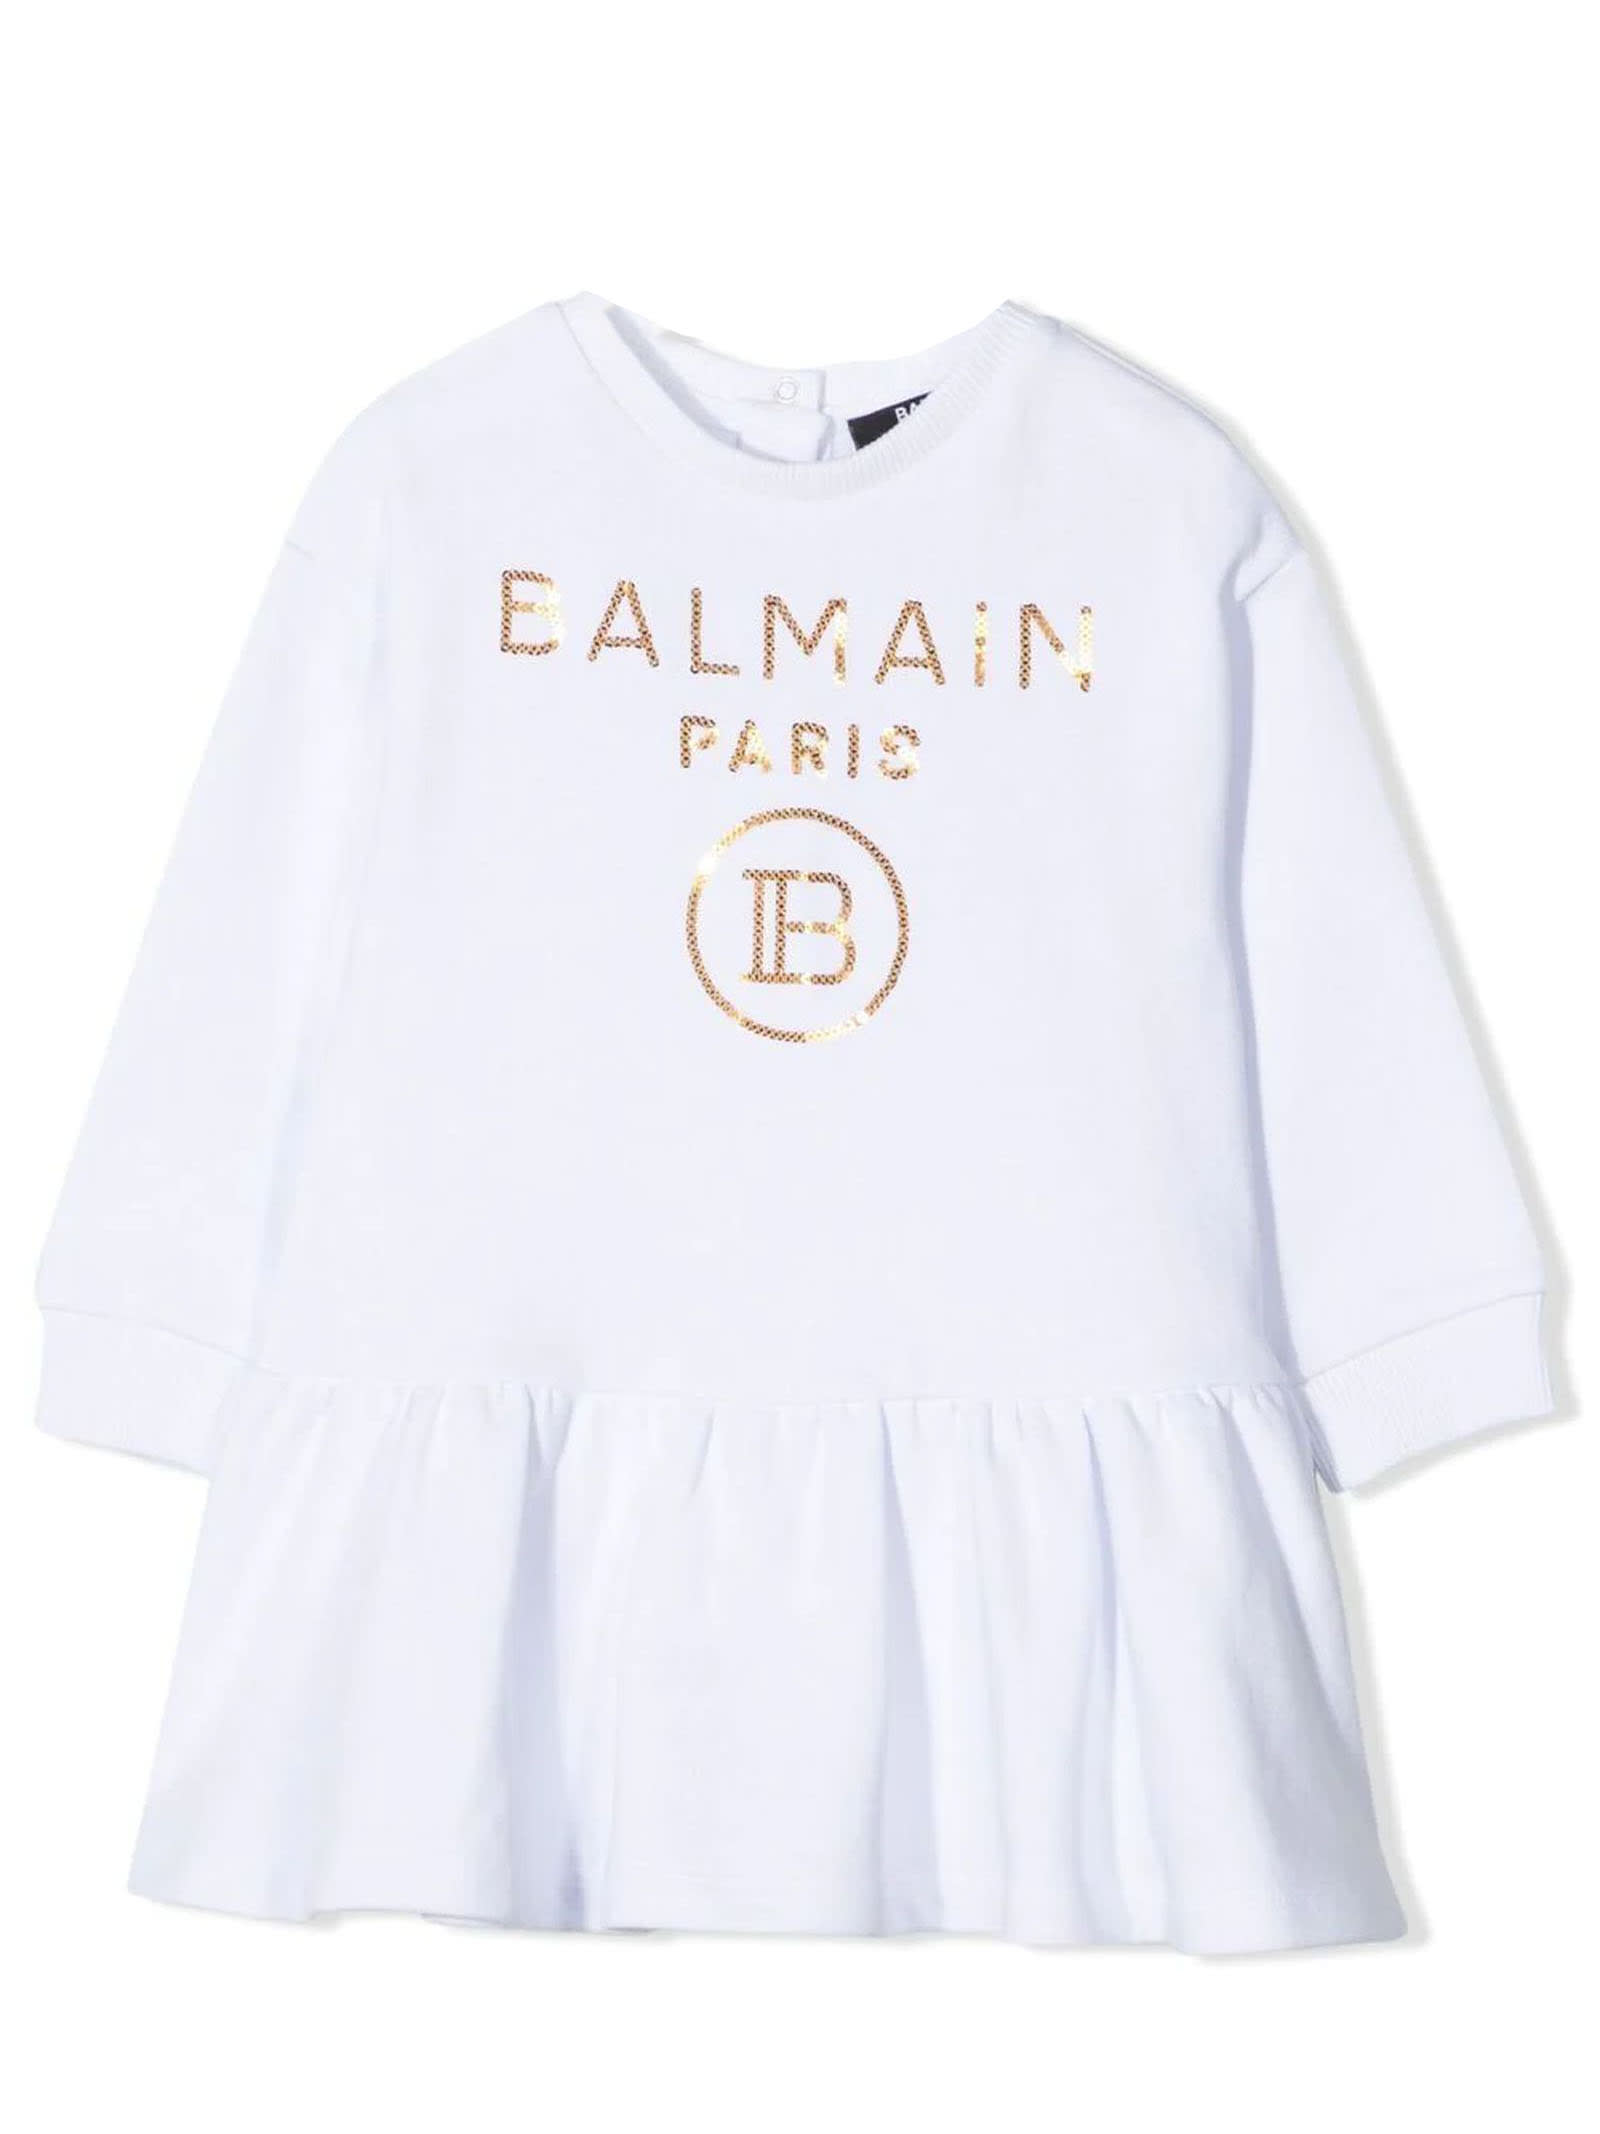 BALMAIN WHITE COTTON DRESS,6O1830OX360B 100